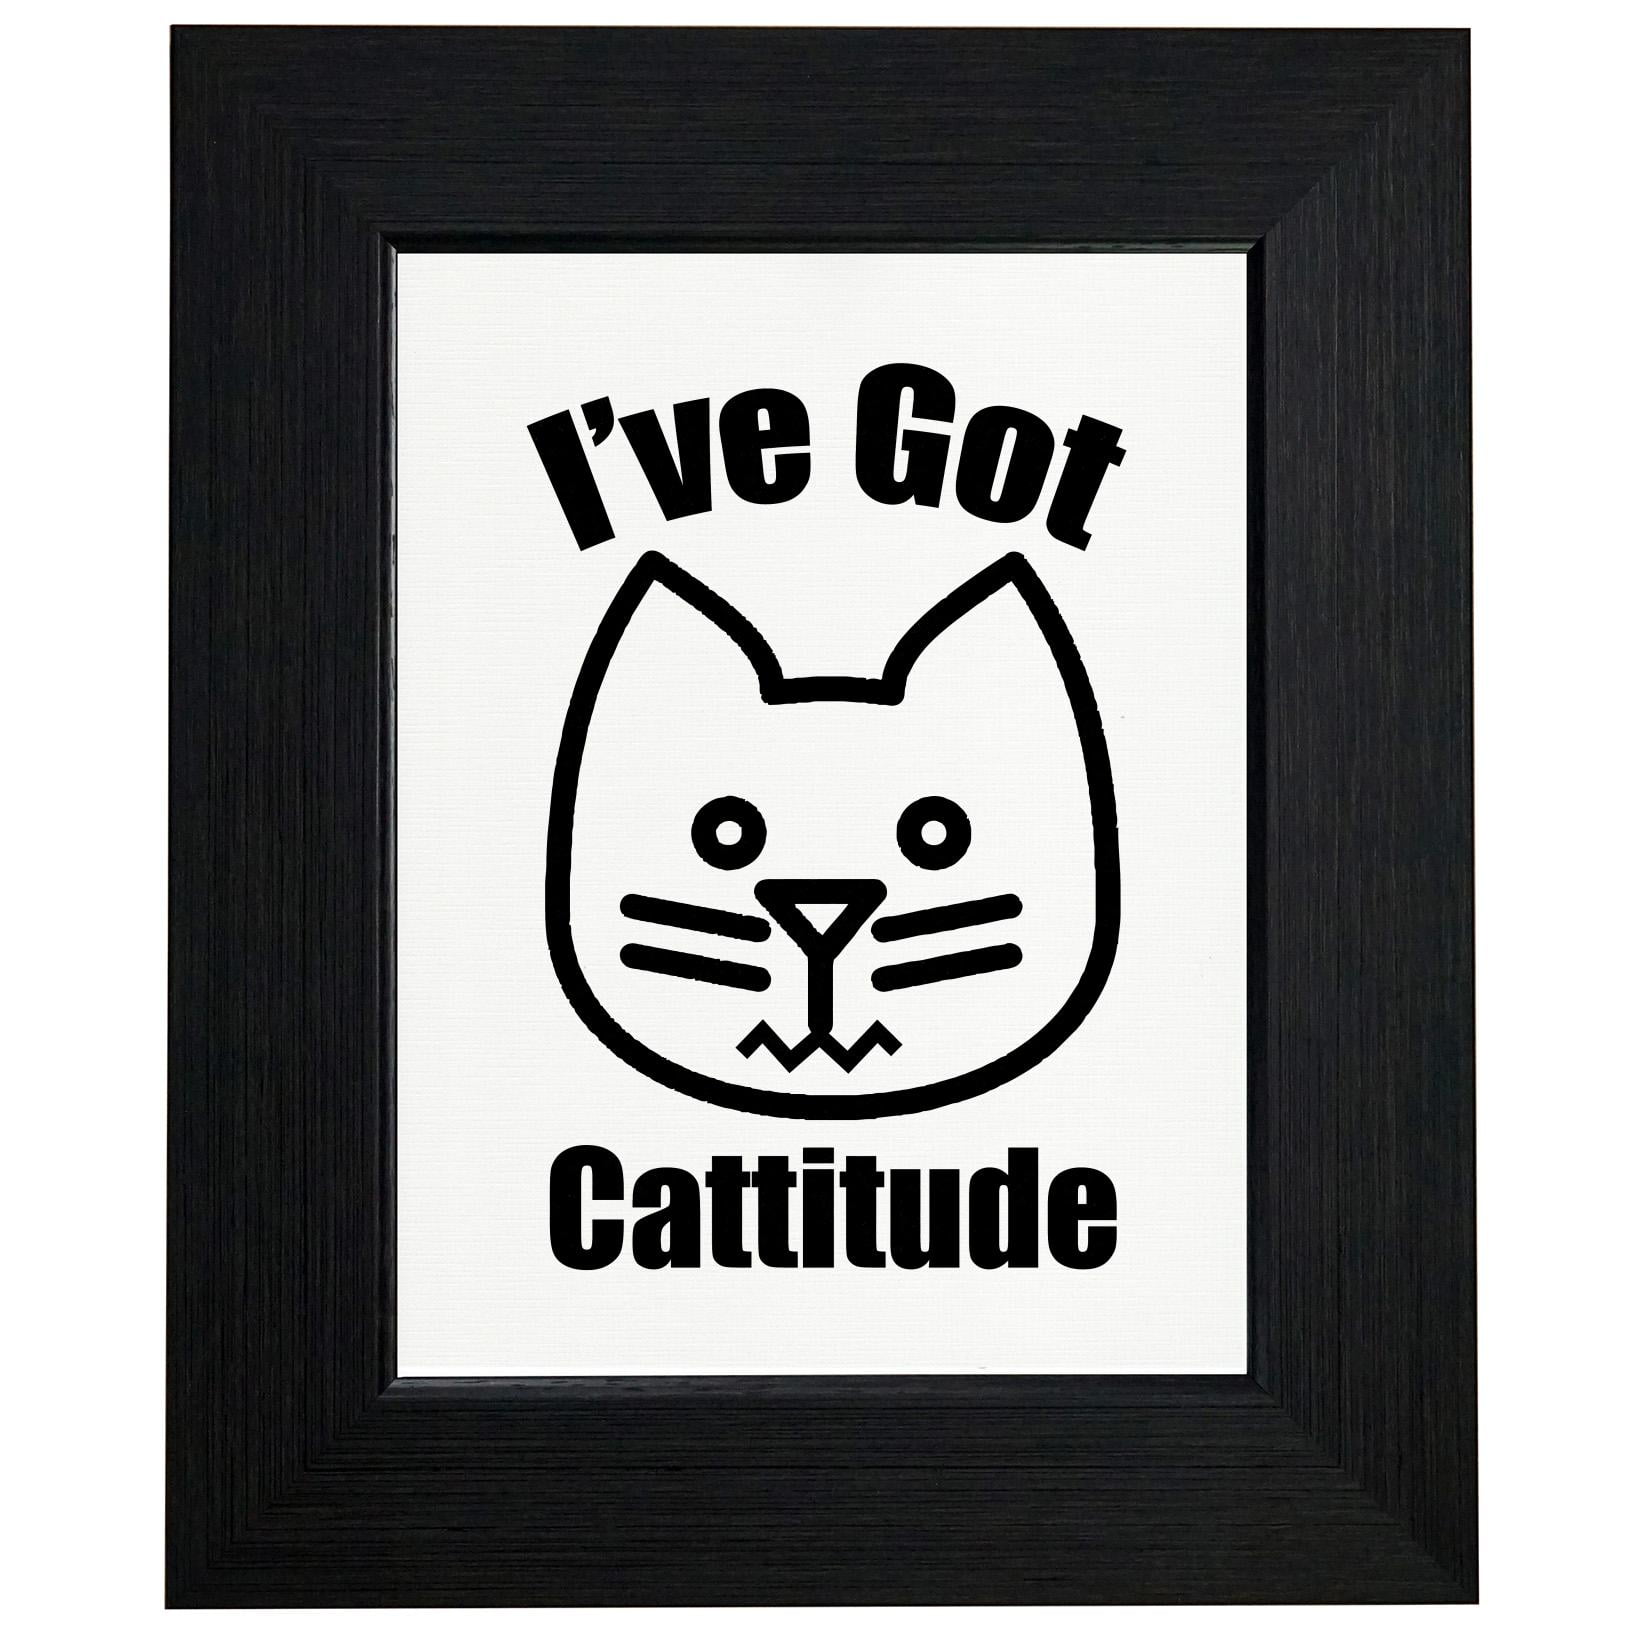 I've Got Cattitude - Cute Cat Attitude Sassy Love Framed Print Poster ...